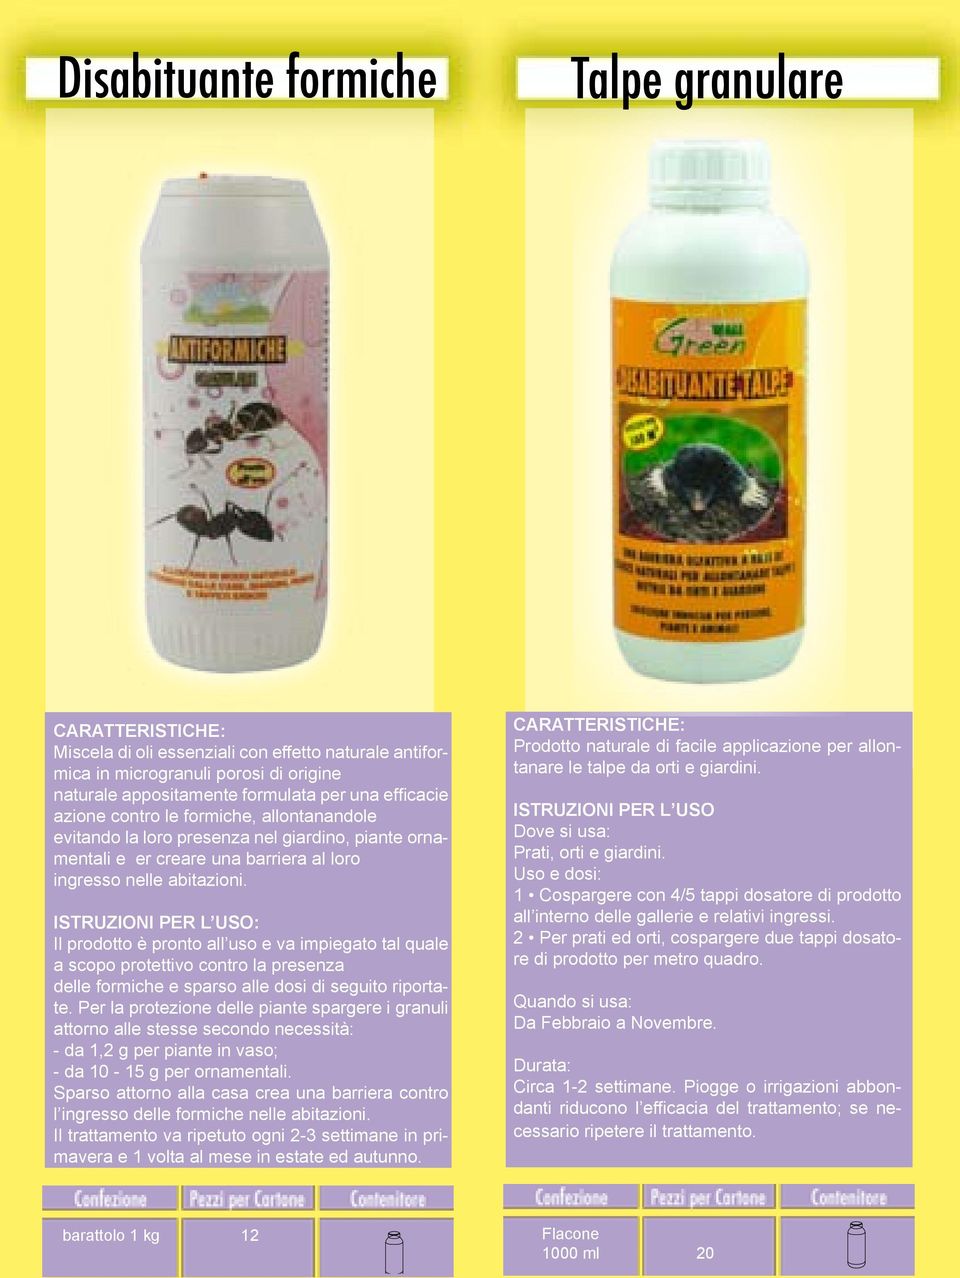 Il prodotto è pronto all uso e va impiegato tal quale a scopo protettivo contro la presenza delle formiche e sparso alle dosi di seguito riportate.